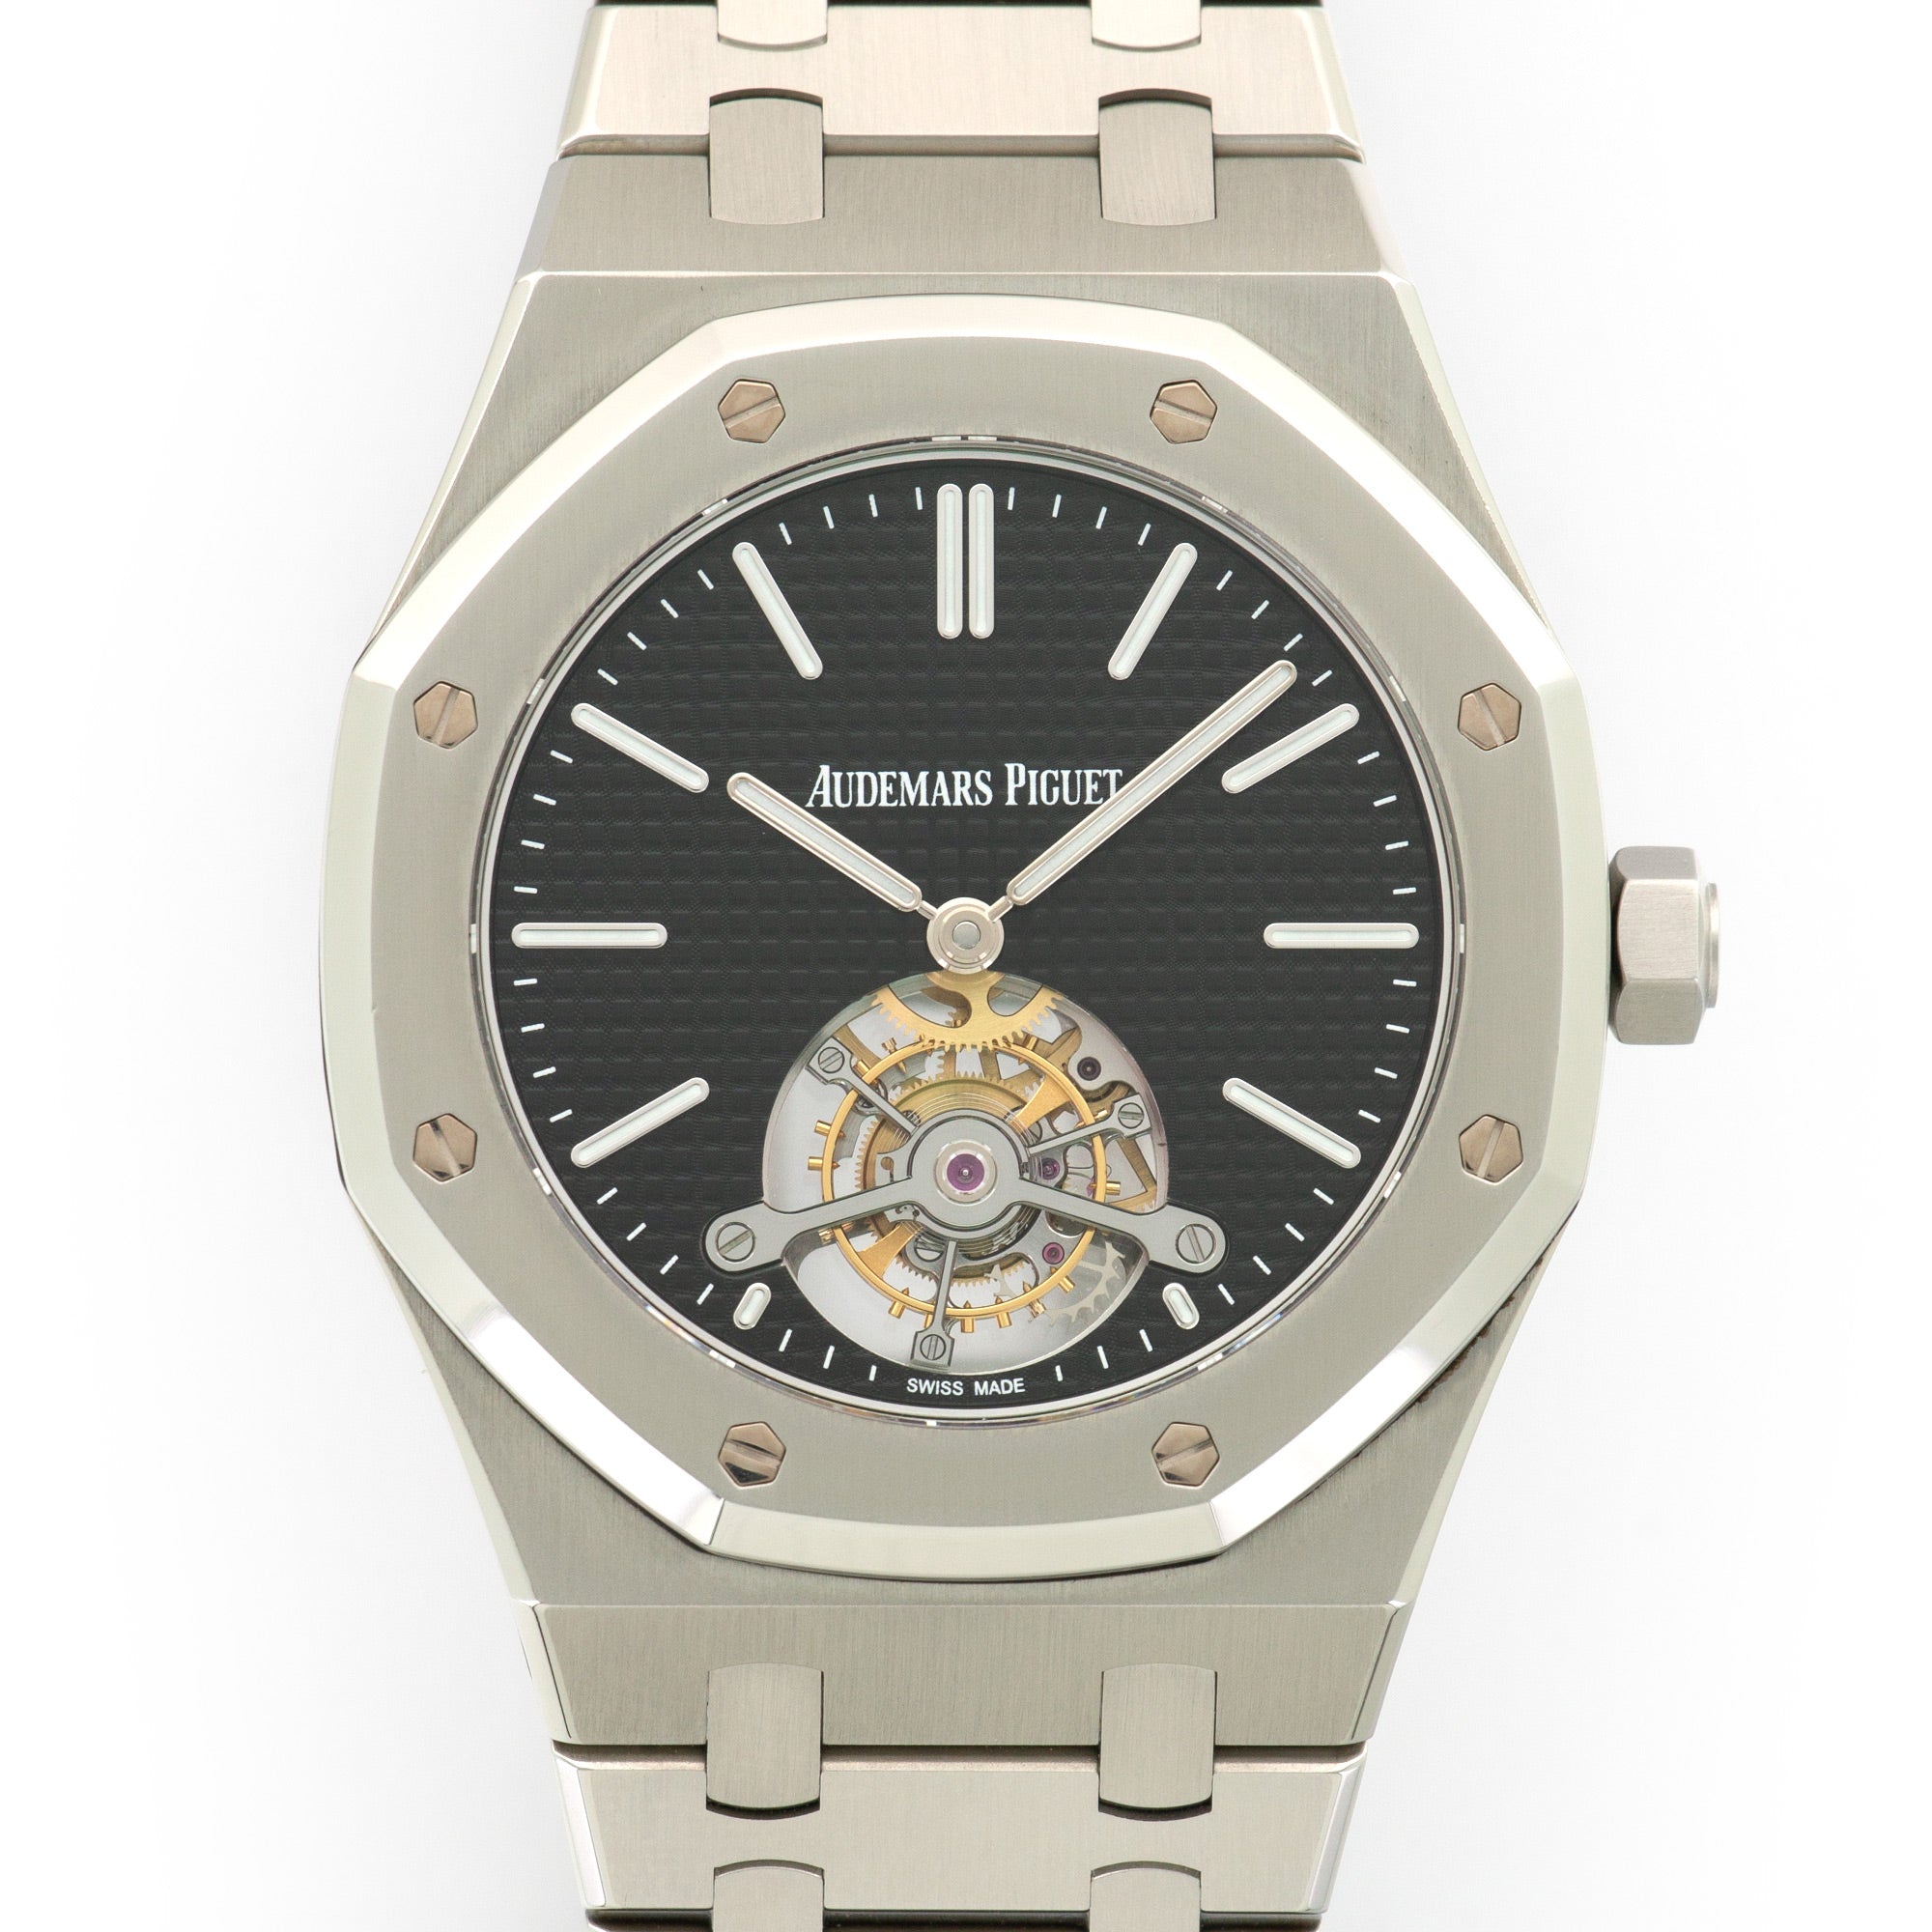 Audemars Piguet - Audemars Piguet Royal Oak Tourbillon Watch Ref. 26512 - The Keystone Watches